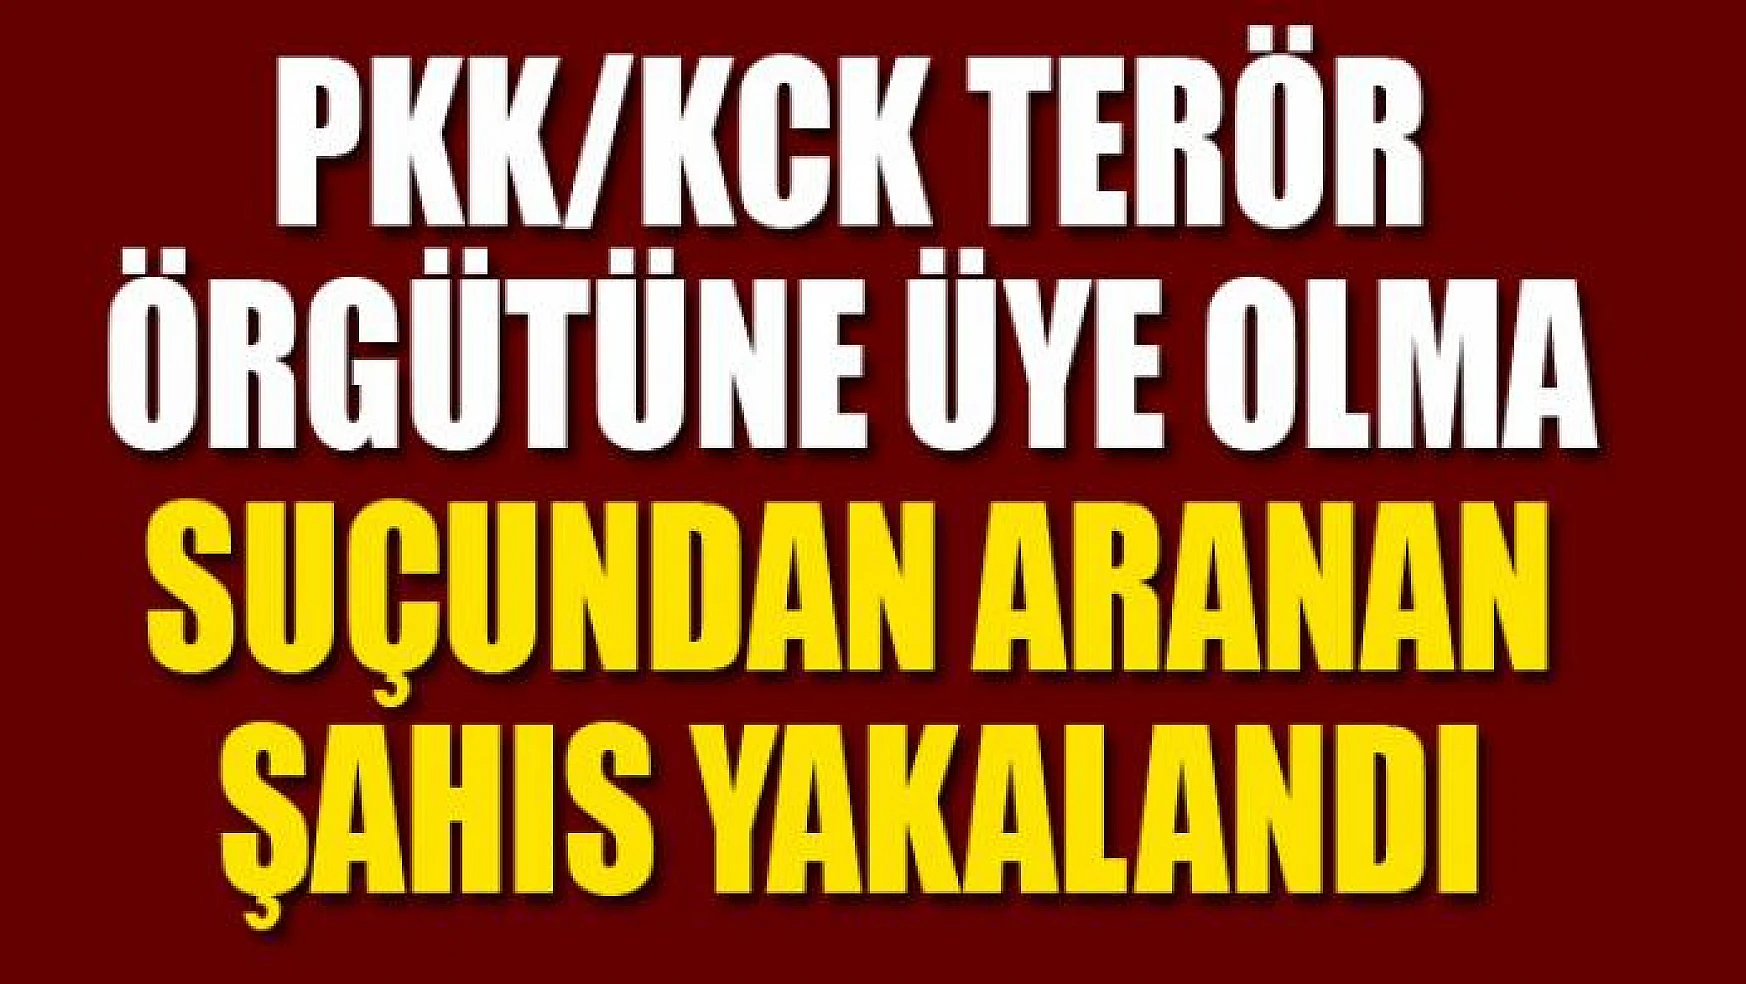 PKK/KCK terör örgütüne üye olma suçundan aranan şahıs yakalandı